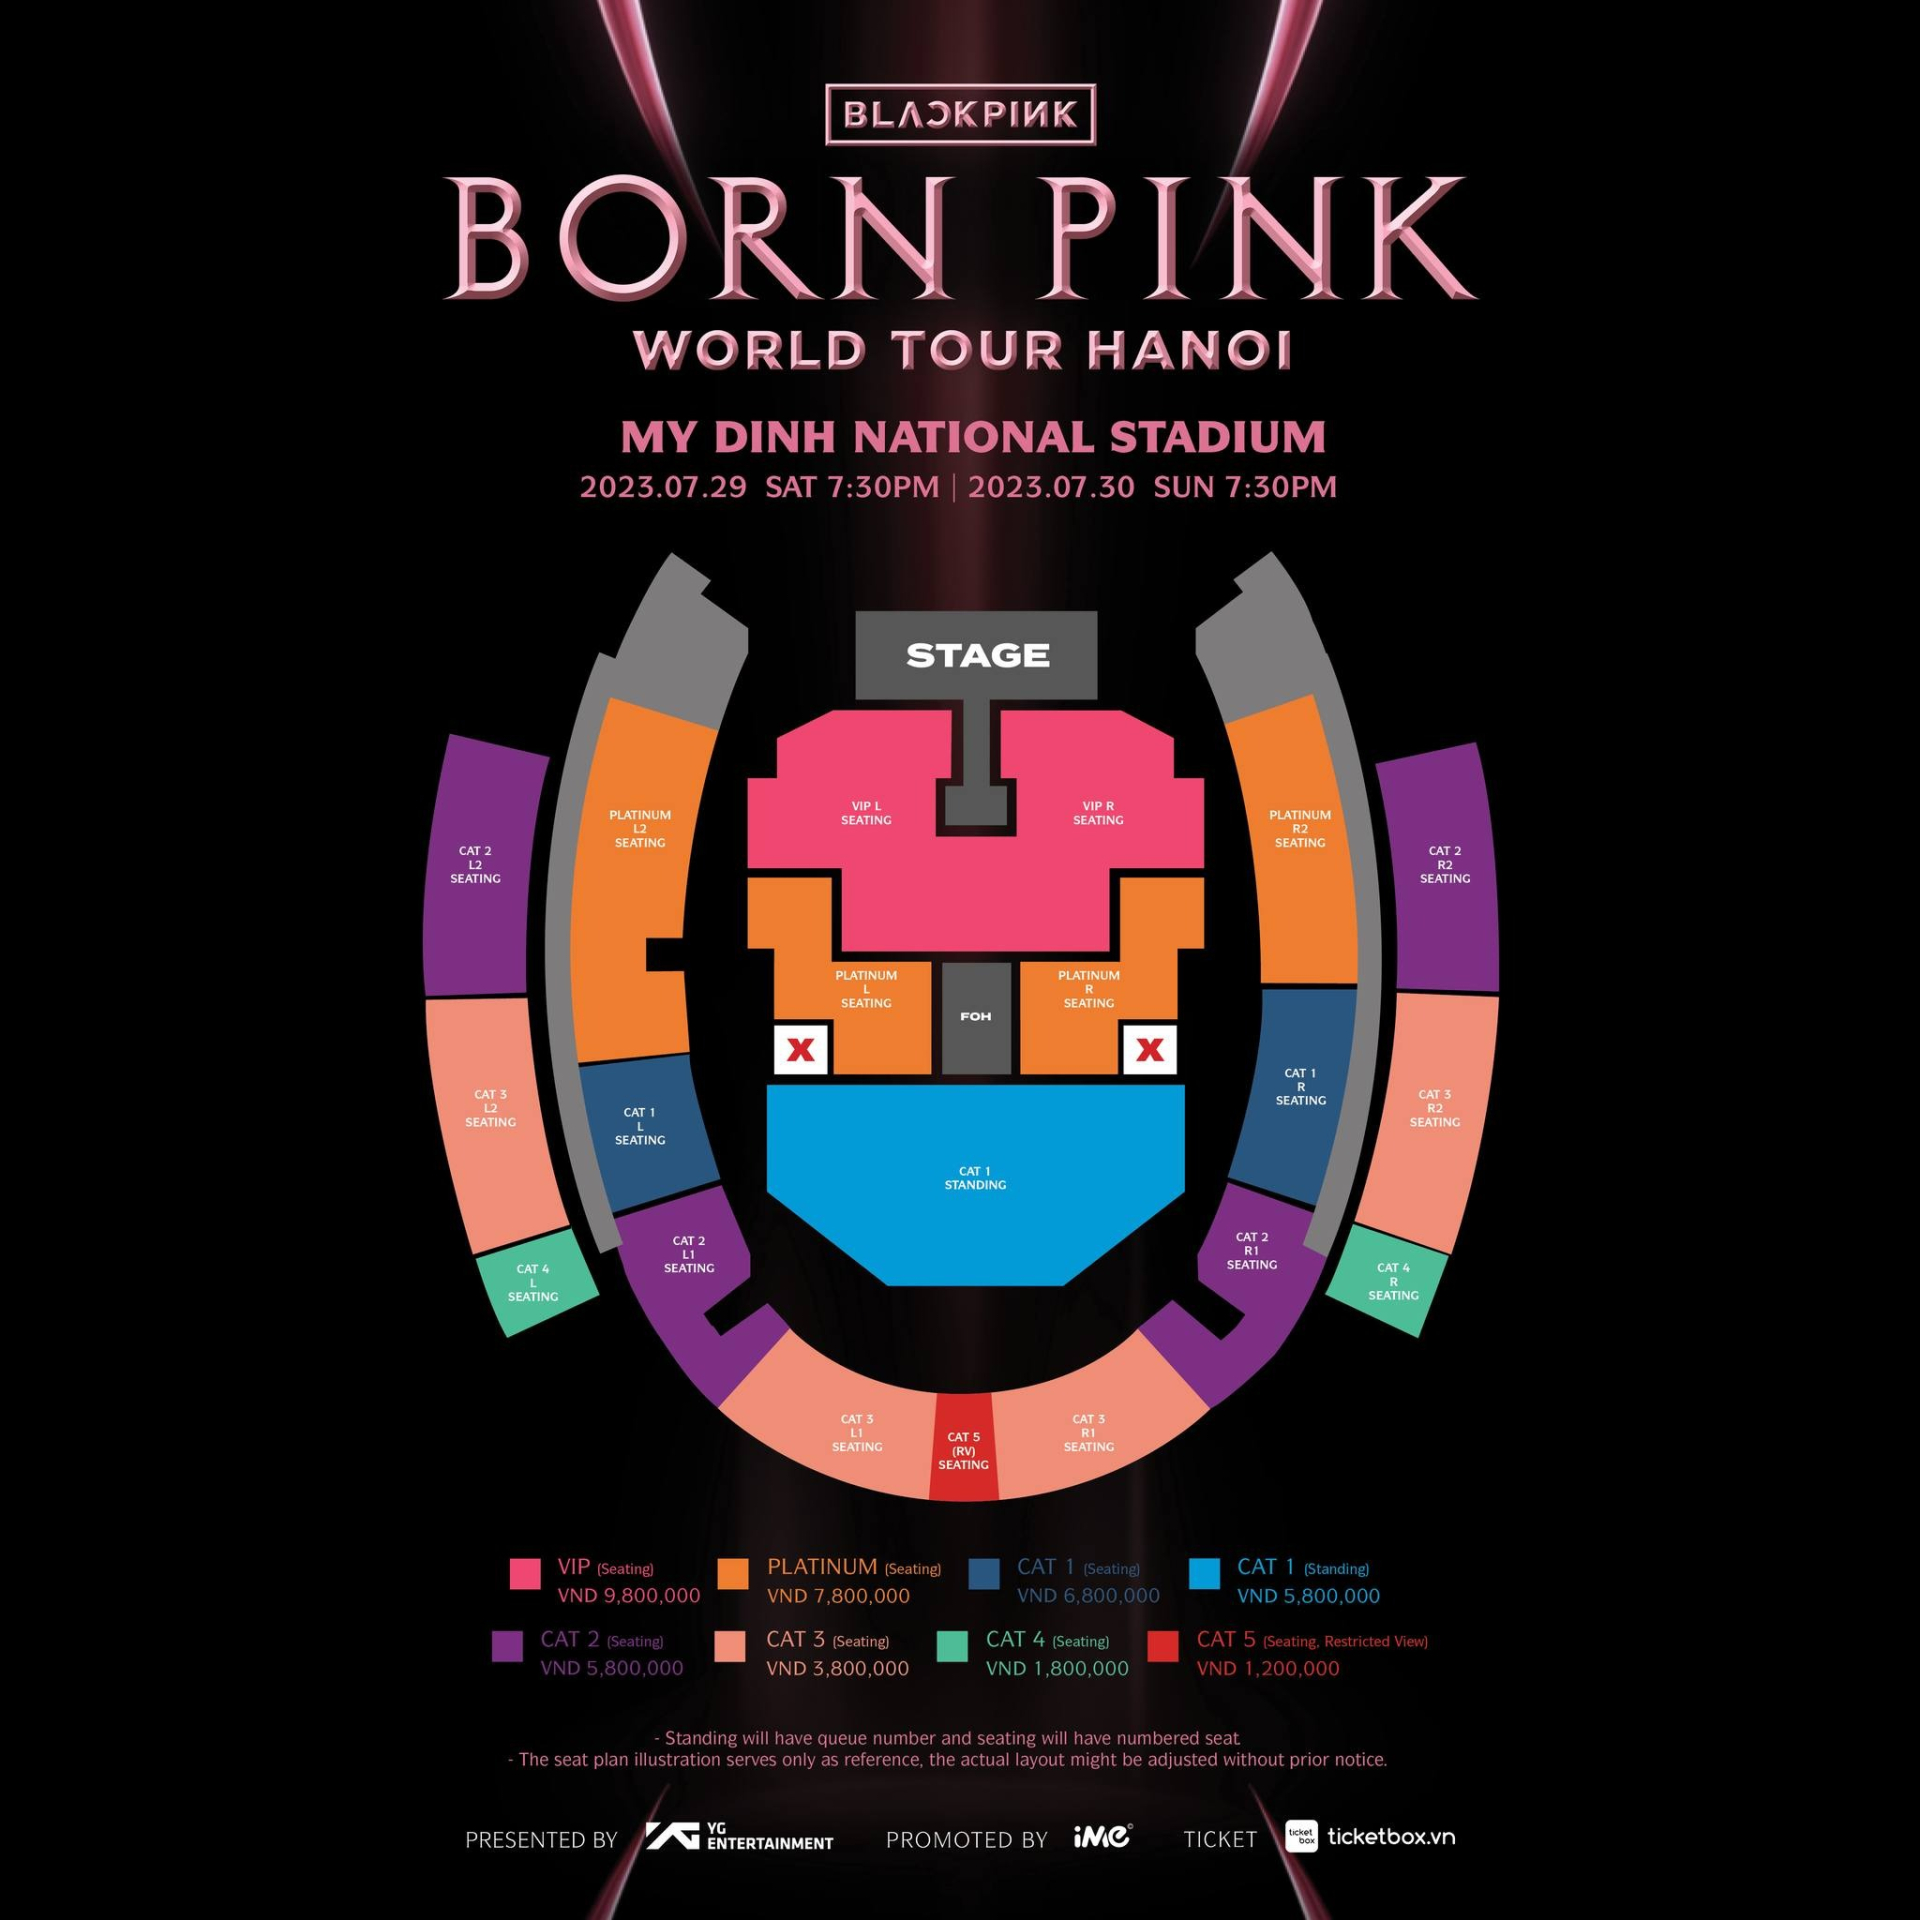 Giá vé và sơ đồ sân khấu chính thức của concert BLACKPINK được công bố, cao nhất gần 10 triệu nhưng quá ít quyền lợi? - ảnh 1